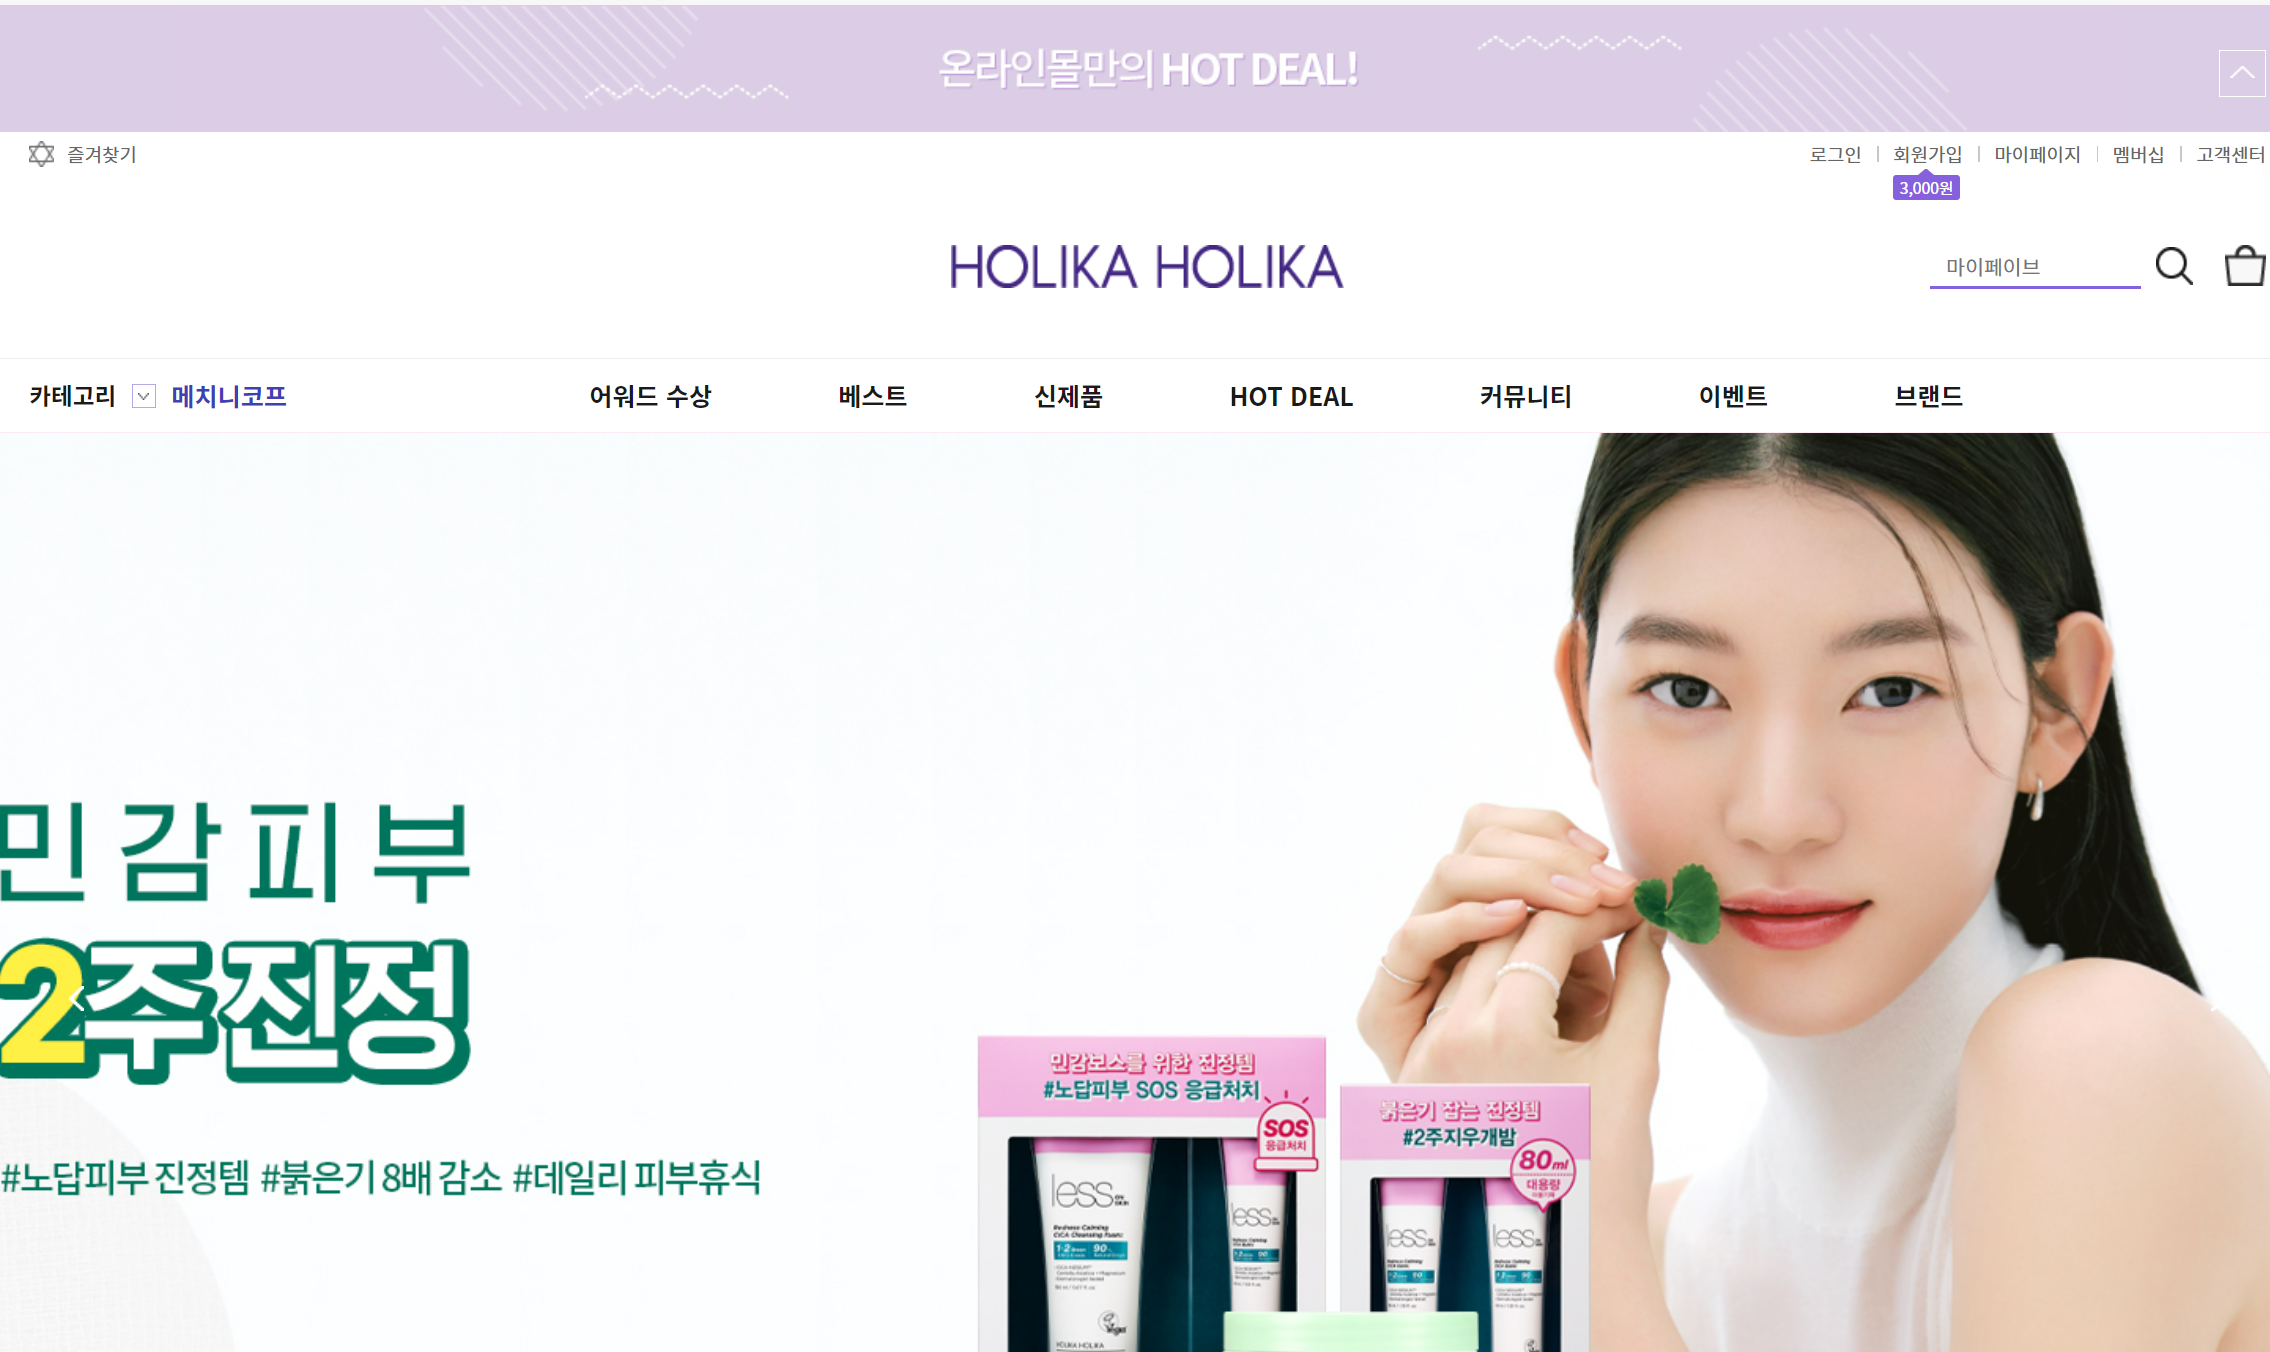 holika holika - shop korea skincare